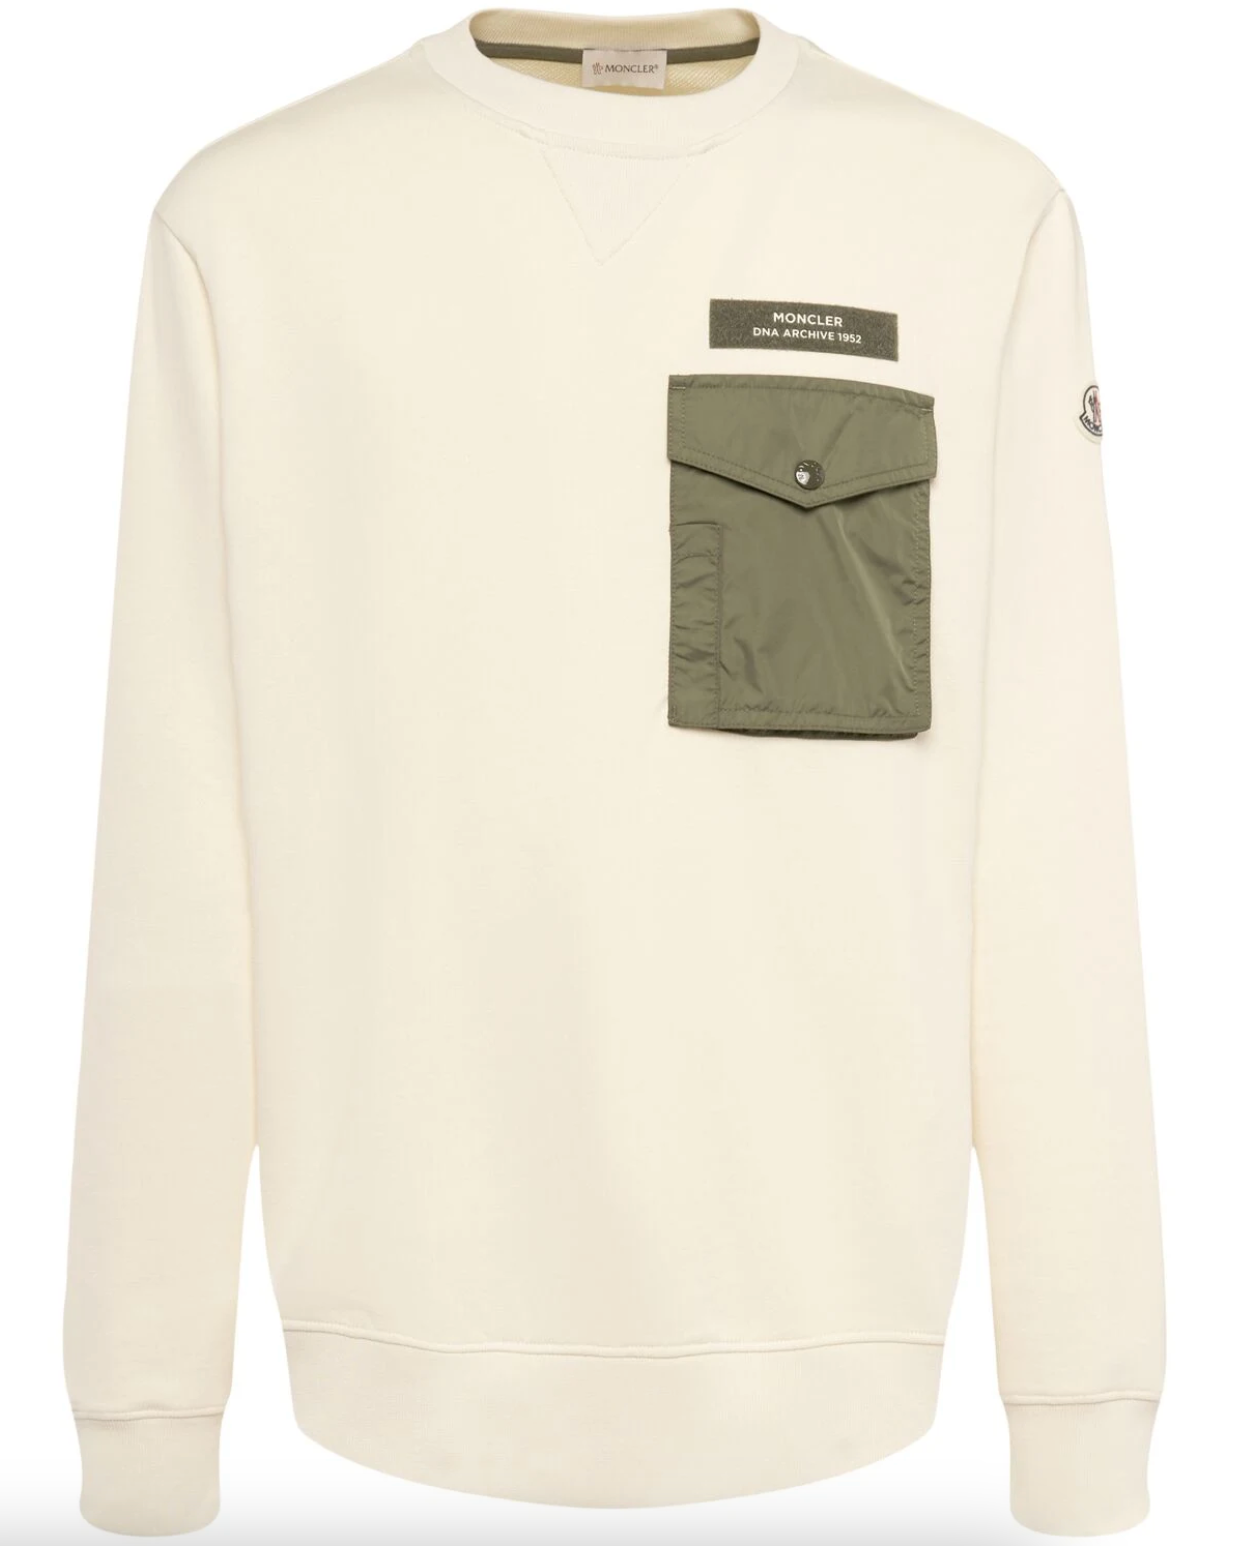 Moncler Cotton Blend Sweatshirt W/Pocket Front Lodz Polska